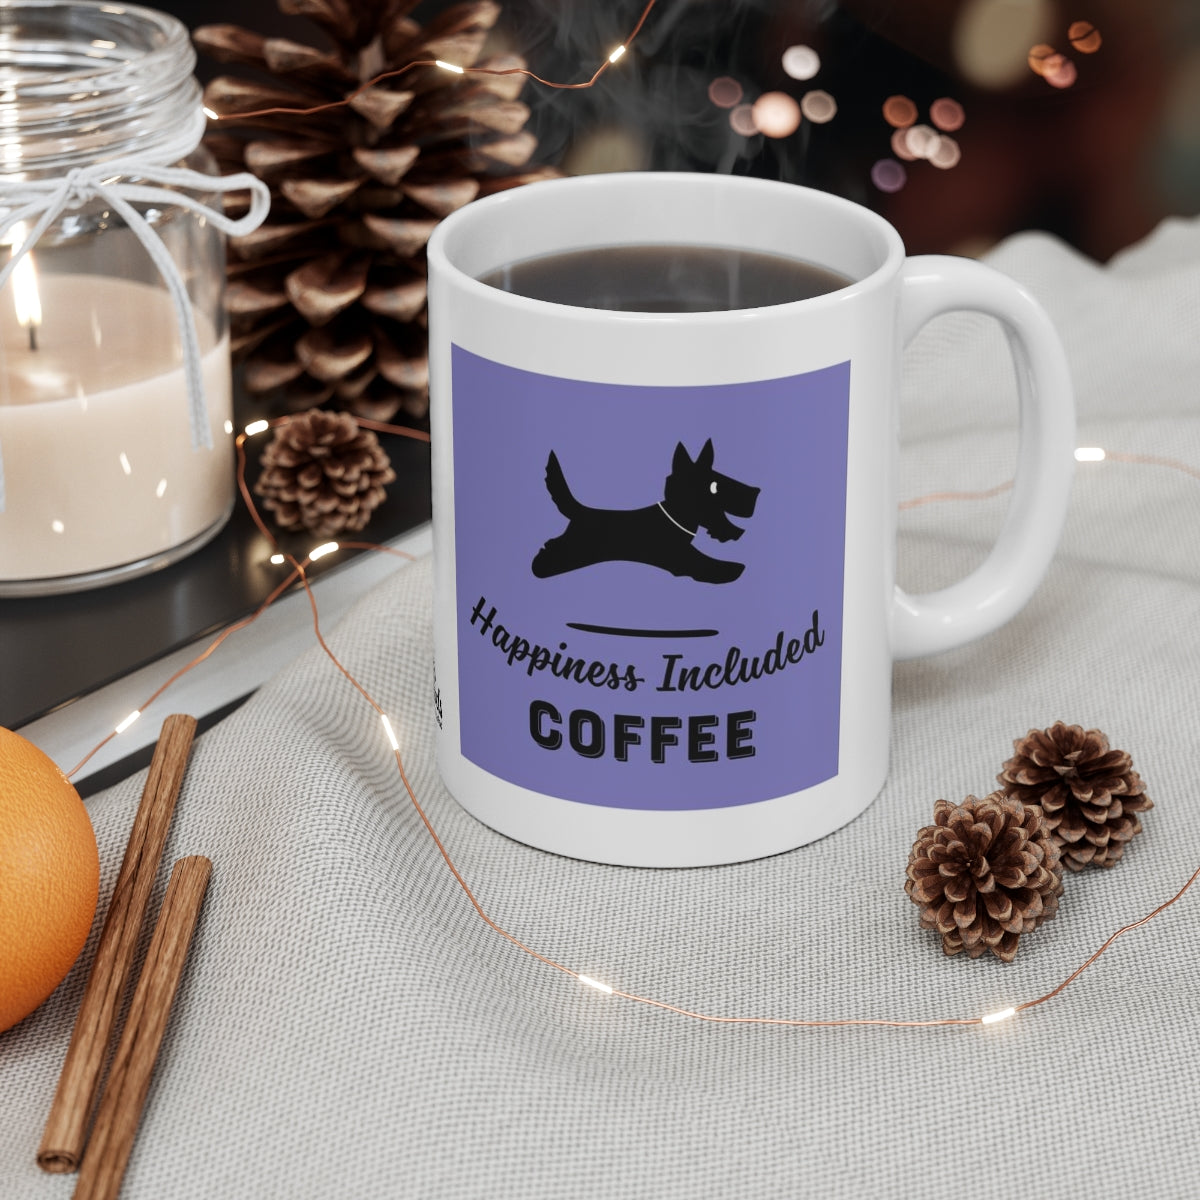 Happiness Included Coffee Mug Purple